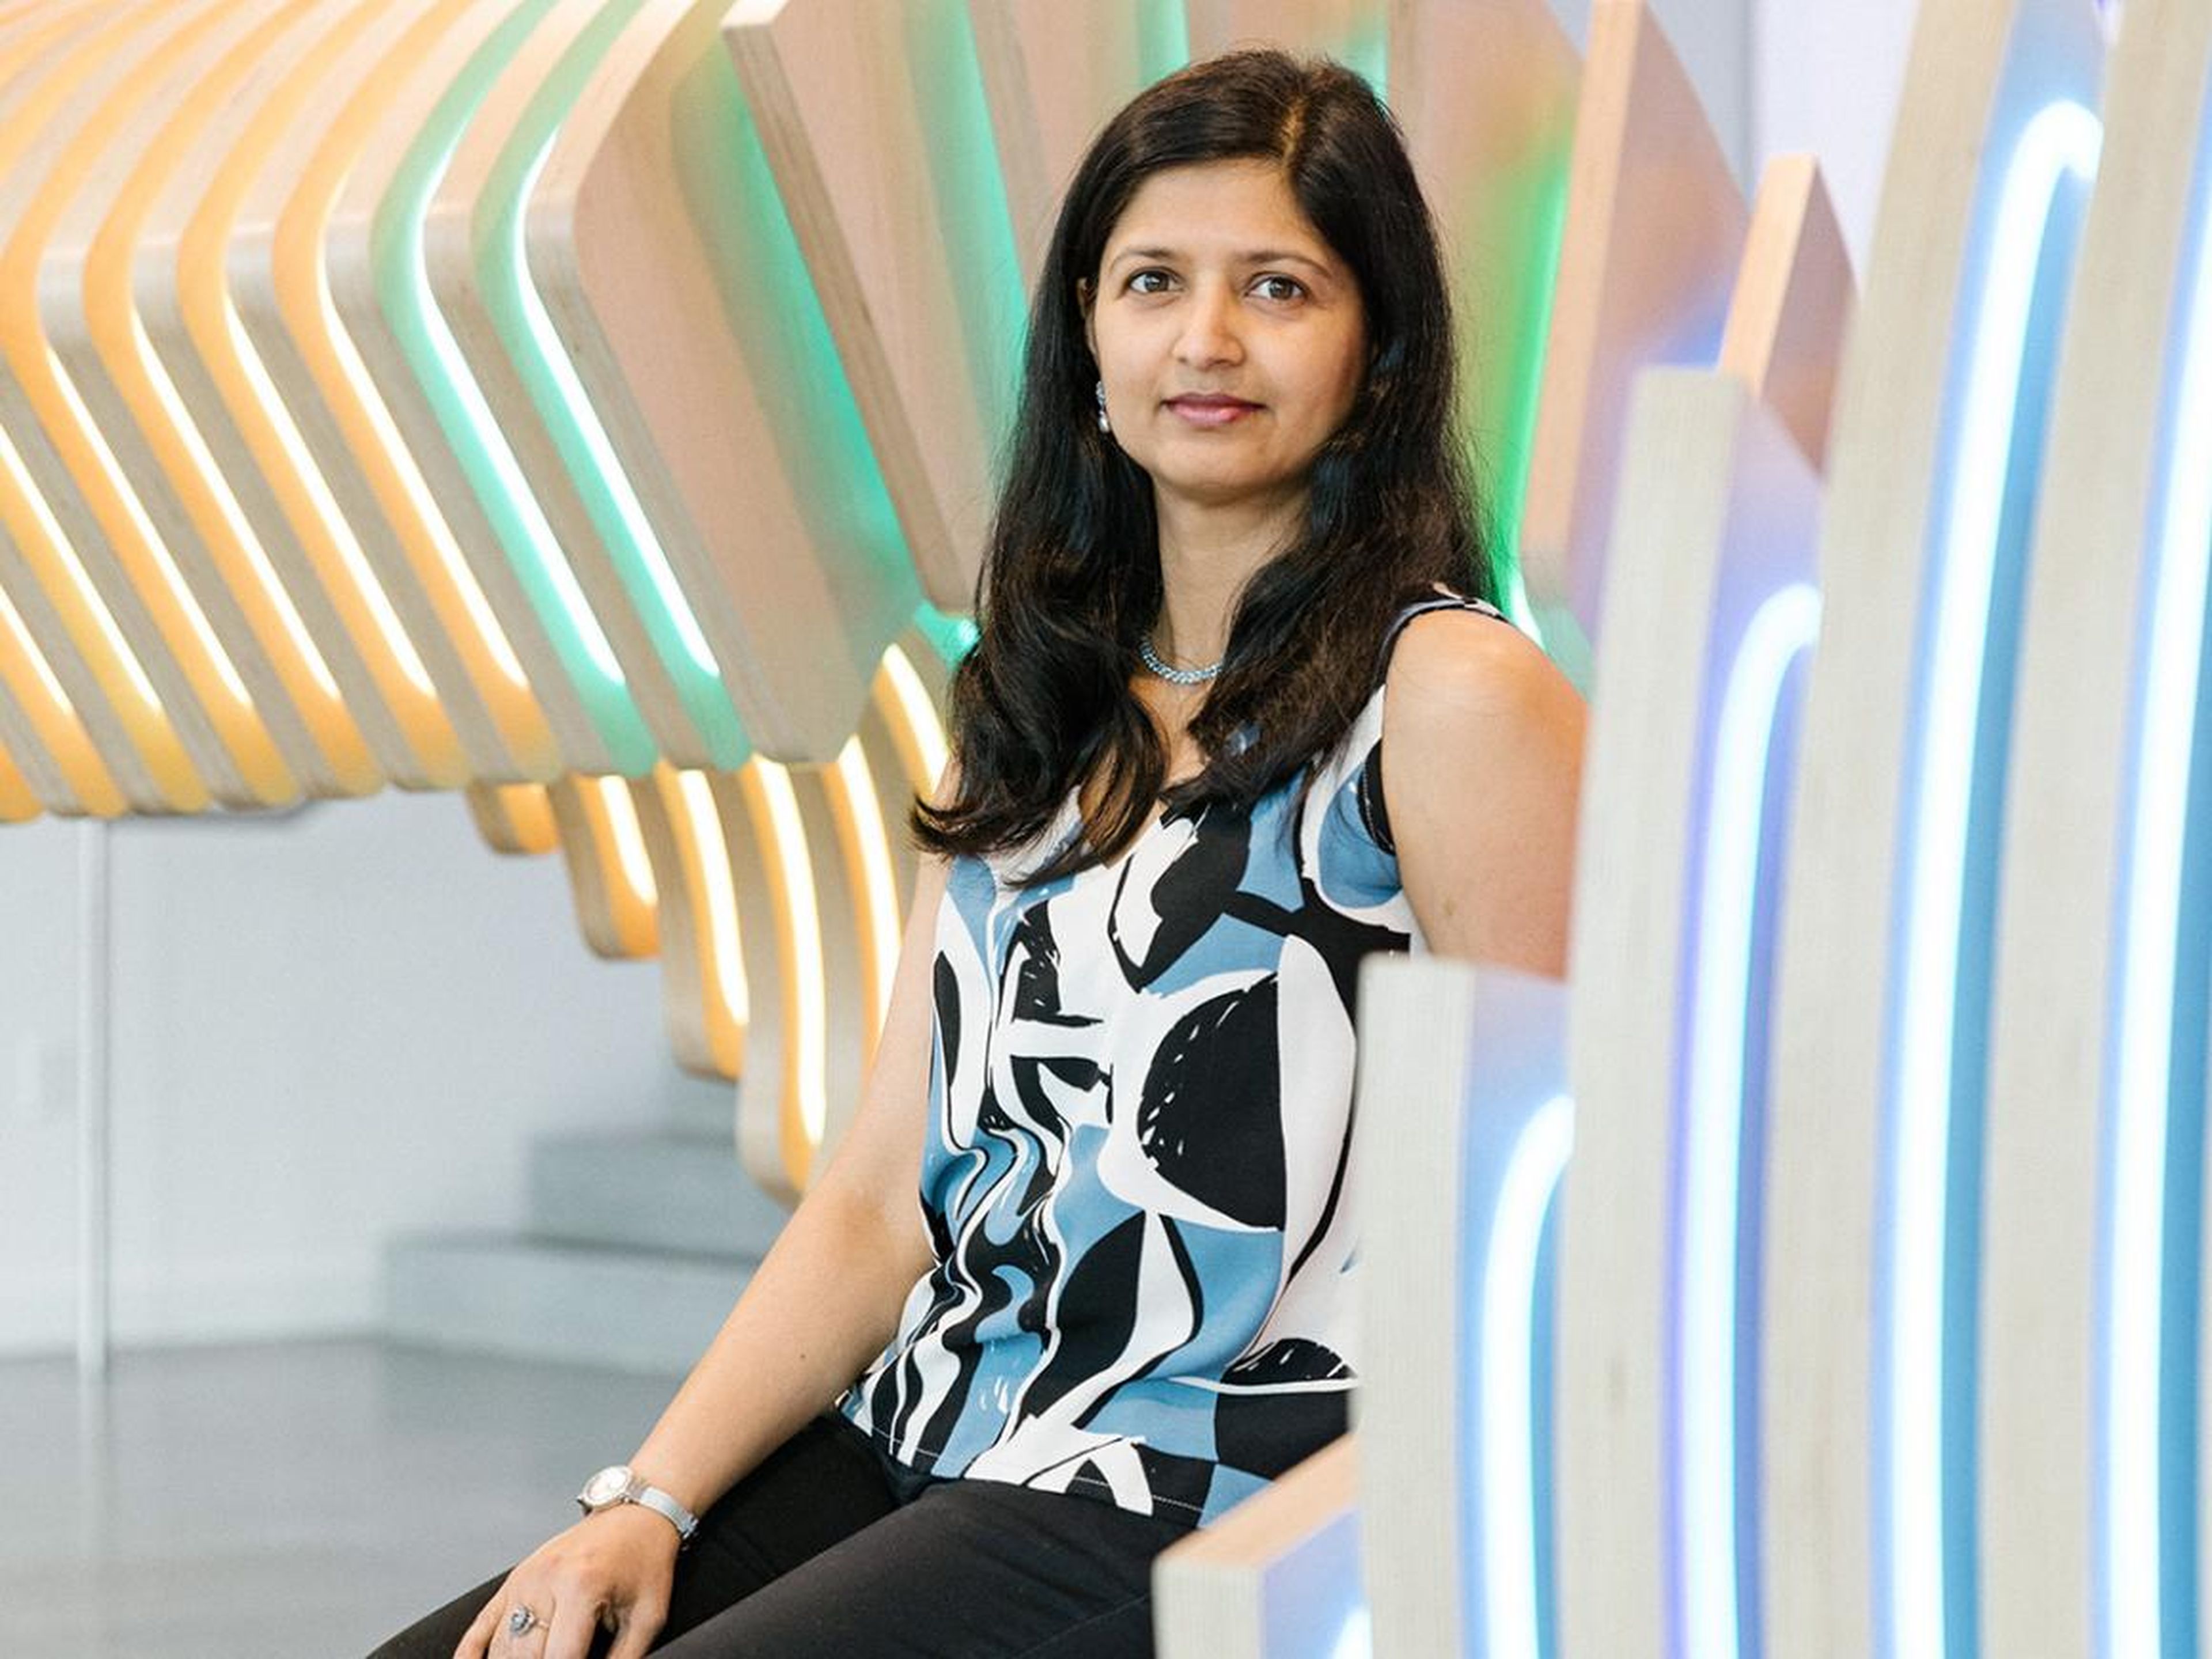 Aparna Sinha de Google está liderando el proyecto de software que está sacudiendo silenciosamente Silicon Valley